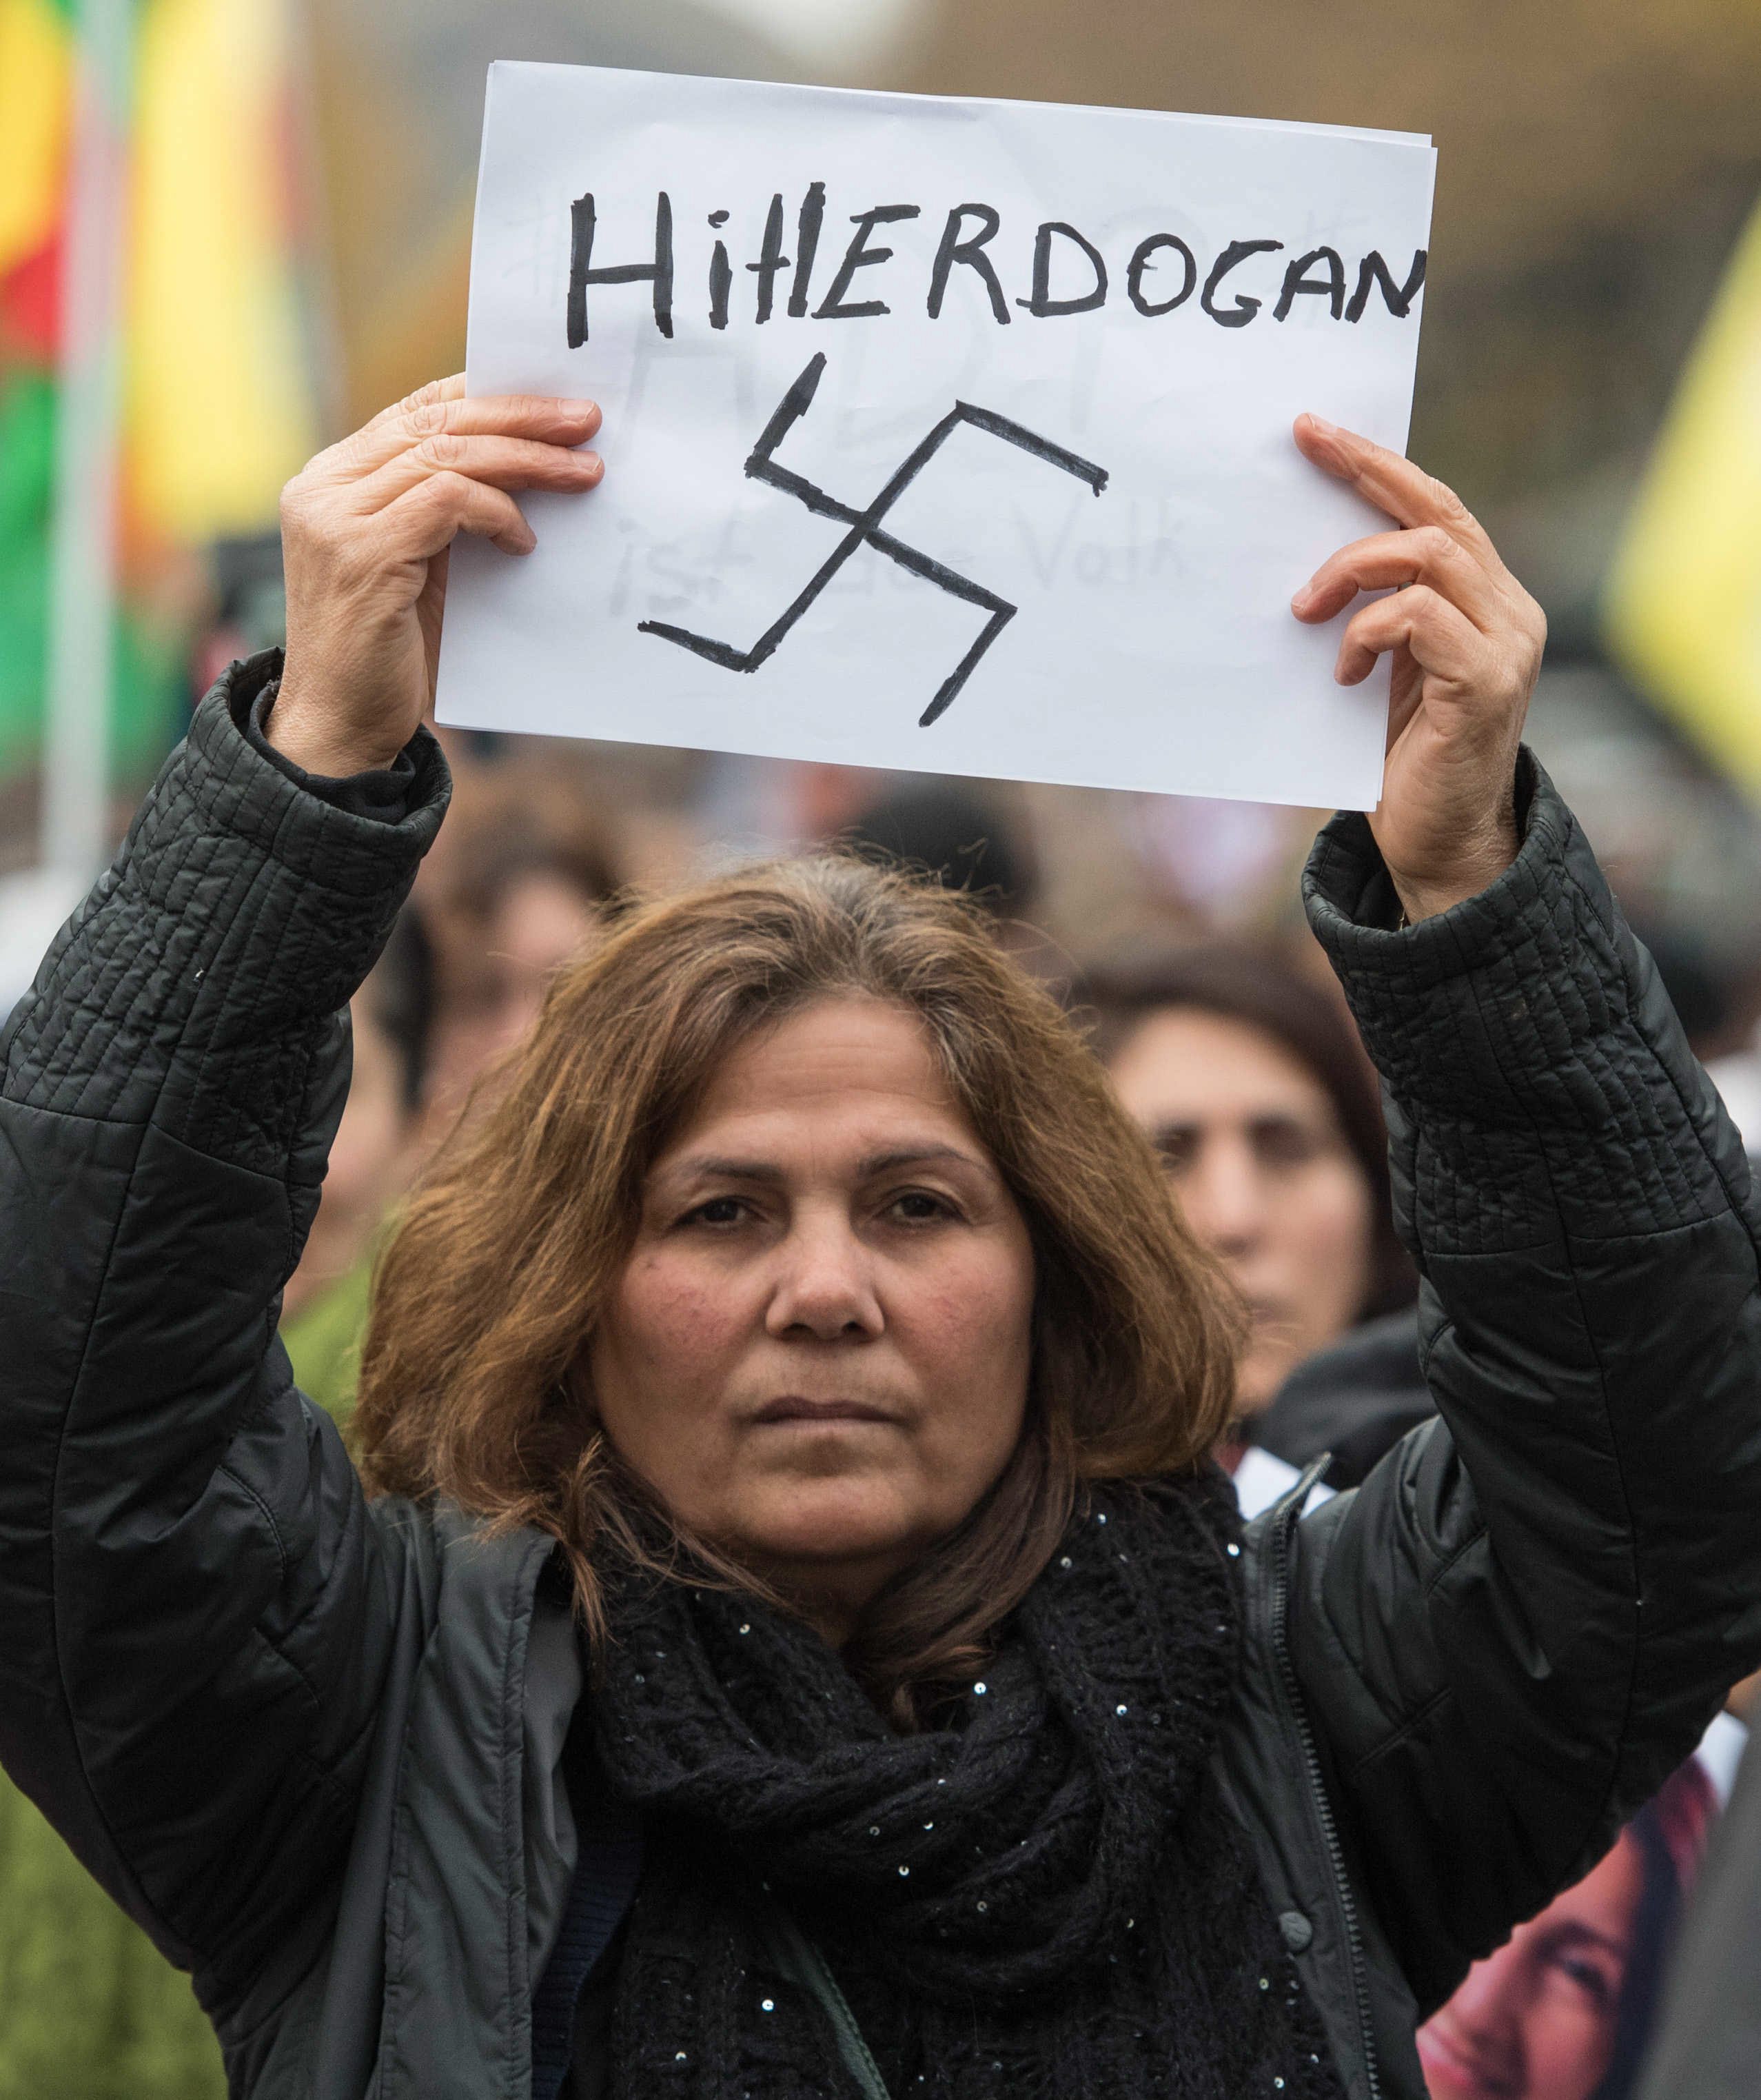 Ερντογάν προς Ευρώπη: Δεν με νοιάζει αν με αποκαλείτε δικτάτορα